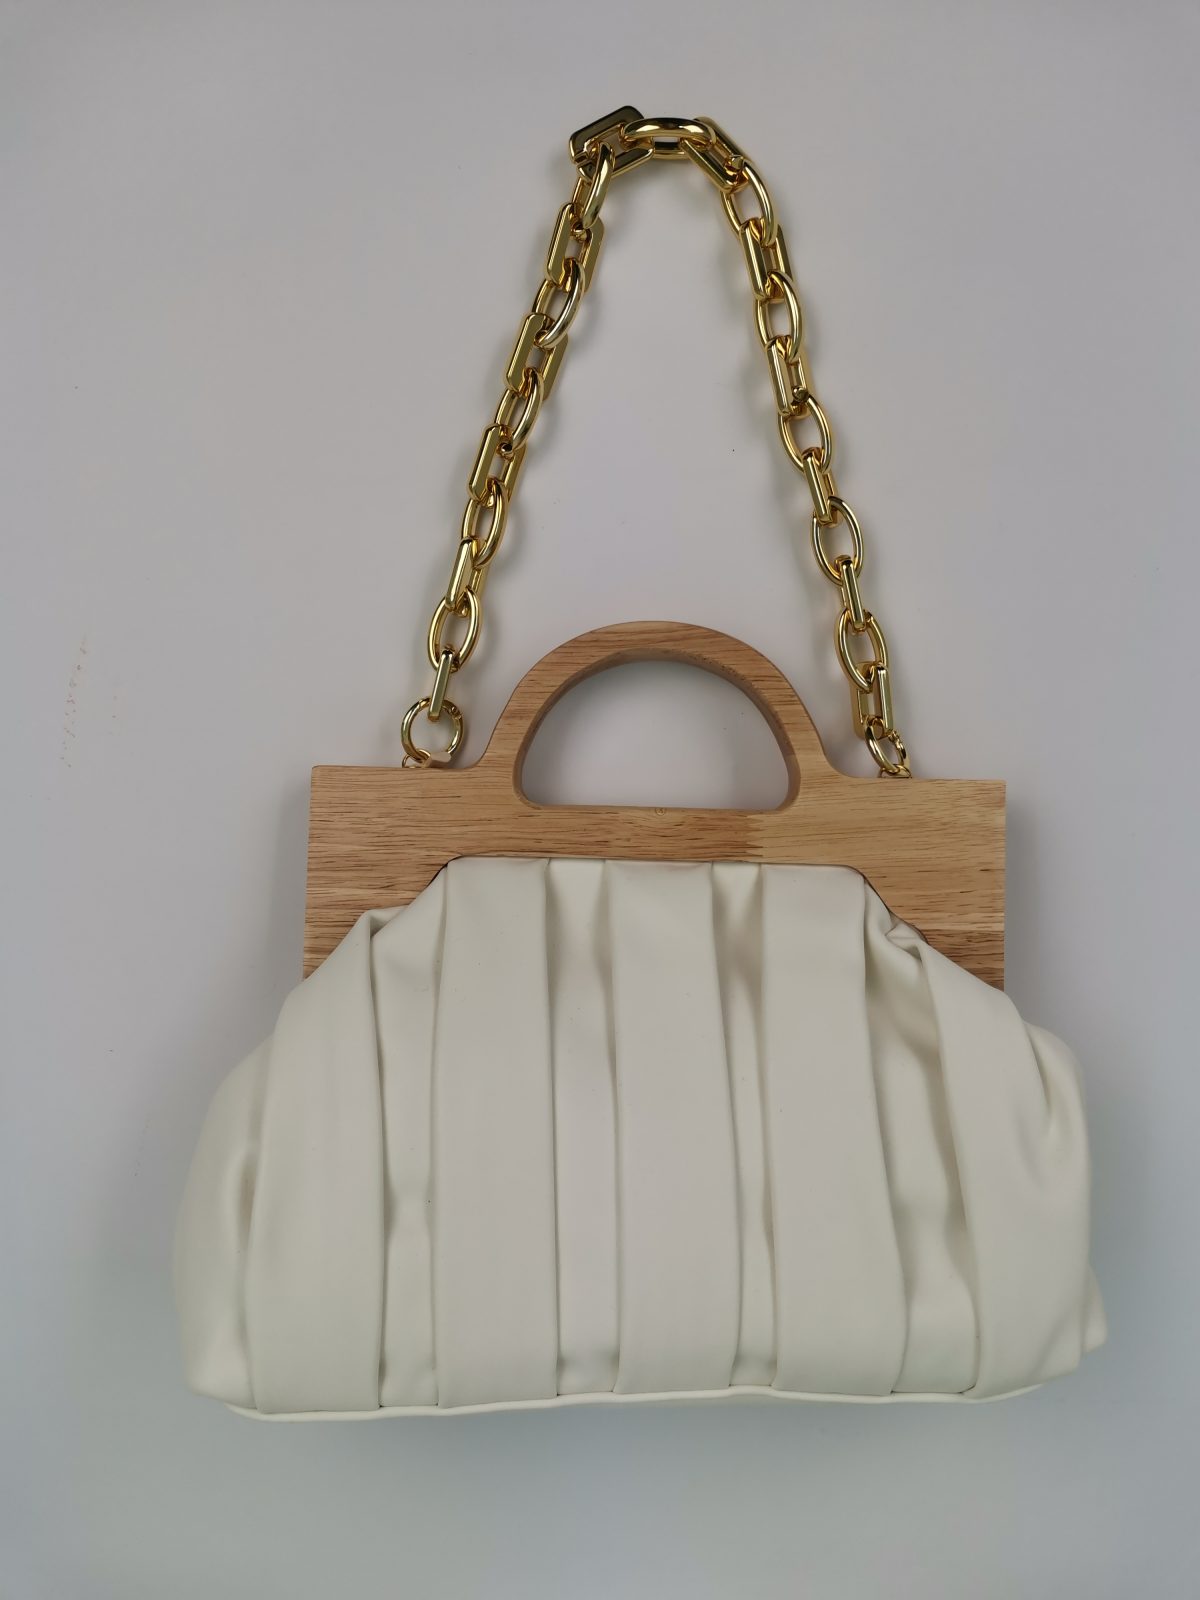 Τσάντα λευκή με ξύλινη λαβή και χρυσή αλυσίδα